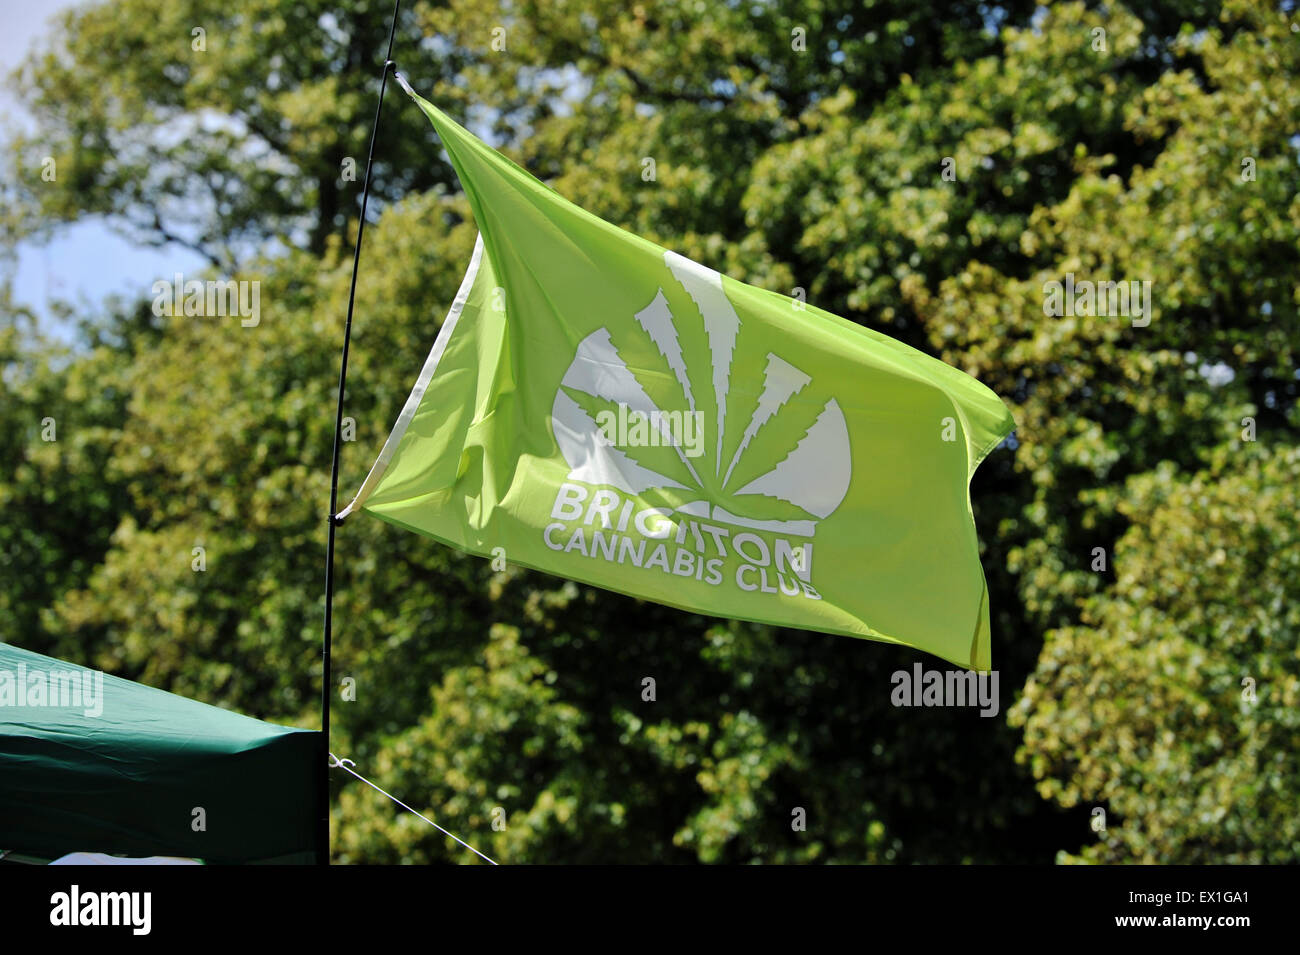 Cannabis clubs -Fotos und -Bildmaterial in hoher Auflösung – Alamy